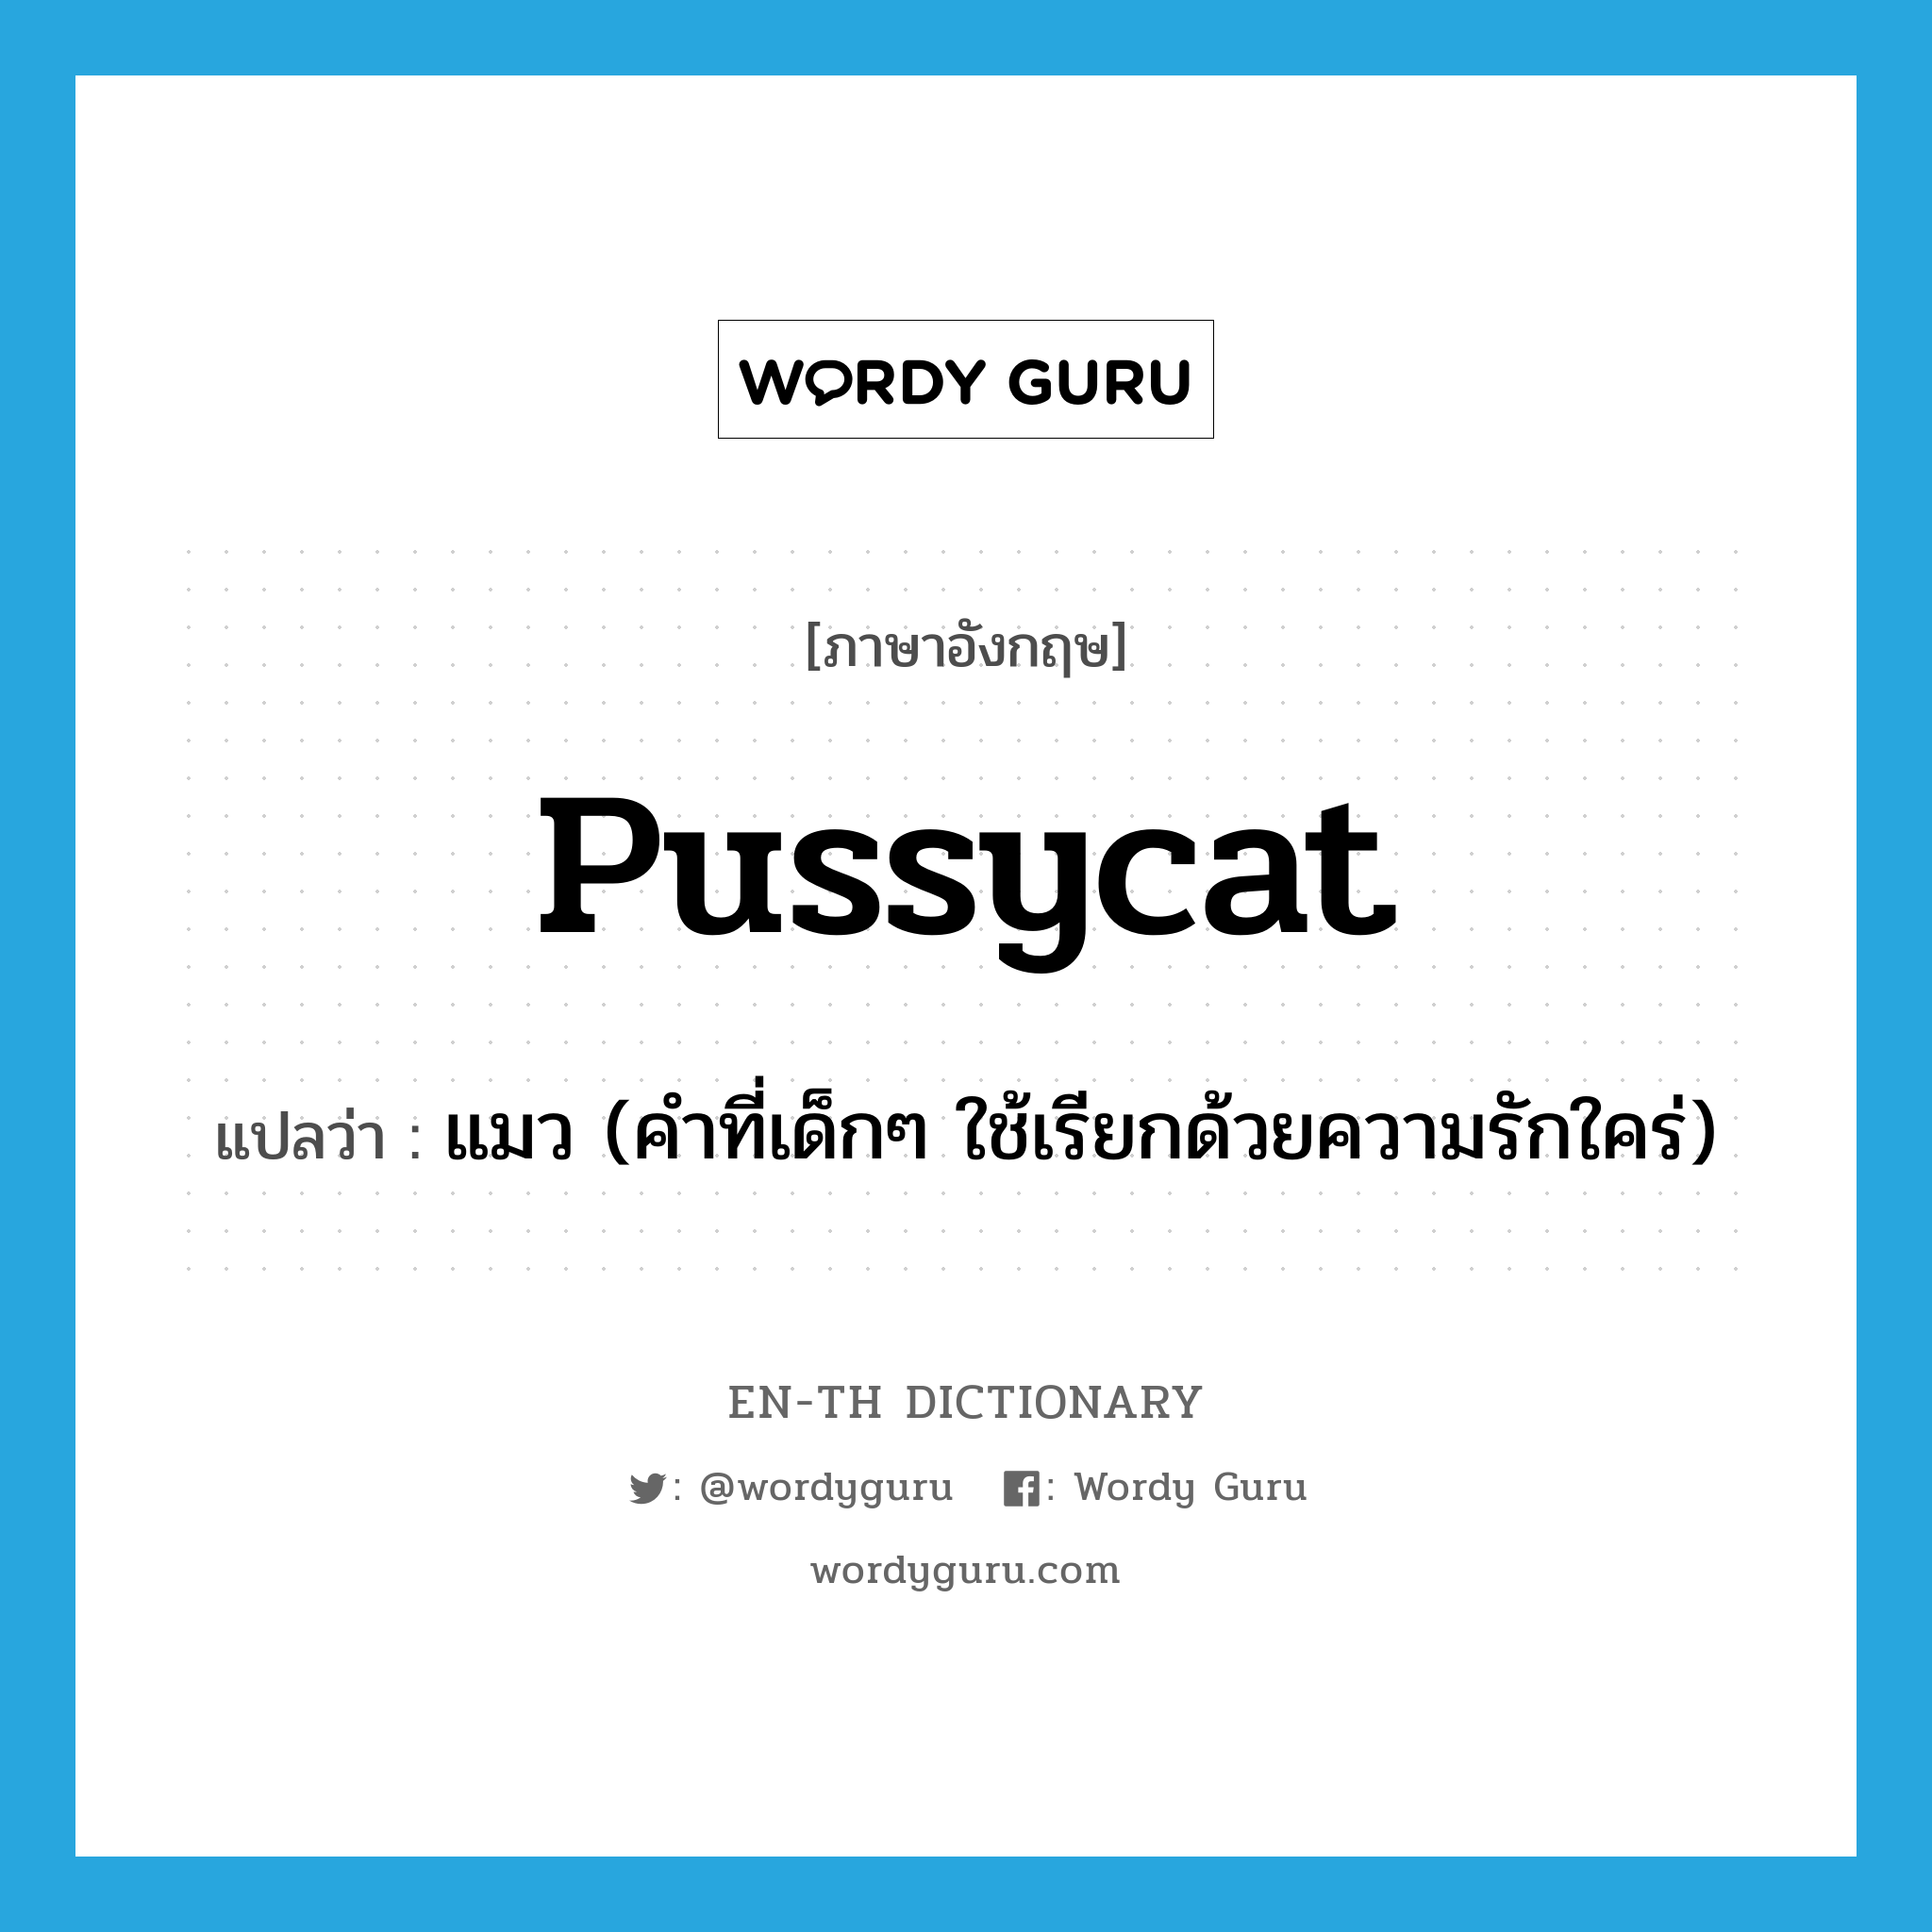 แมว (คำที่เด็กๆ ใช้เรียกด้วยความรักใคร่) ภาษาอังกฤษ?, คำศัพท์ภาษาอังกฤษ แมว (คำที่เด็กๆ ใช้เรียกด้วยความรักใคร่) แปลว่า pussycat ประเภท N หมวด N